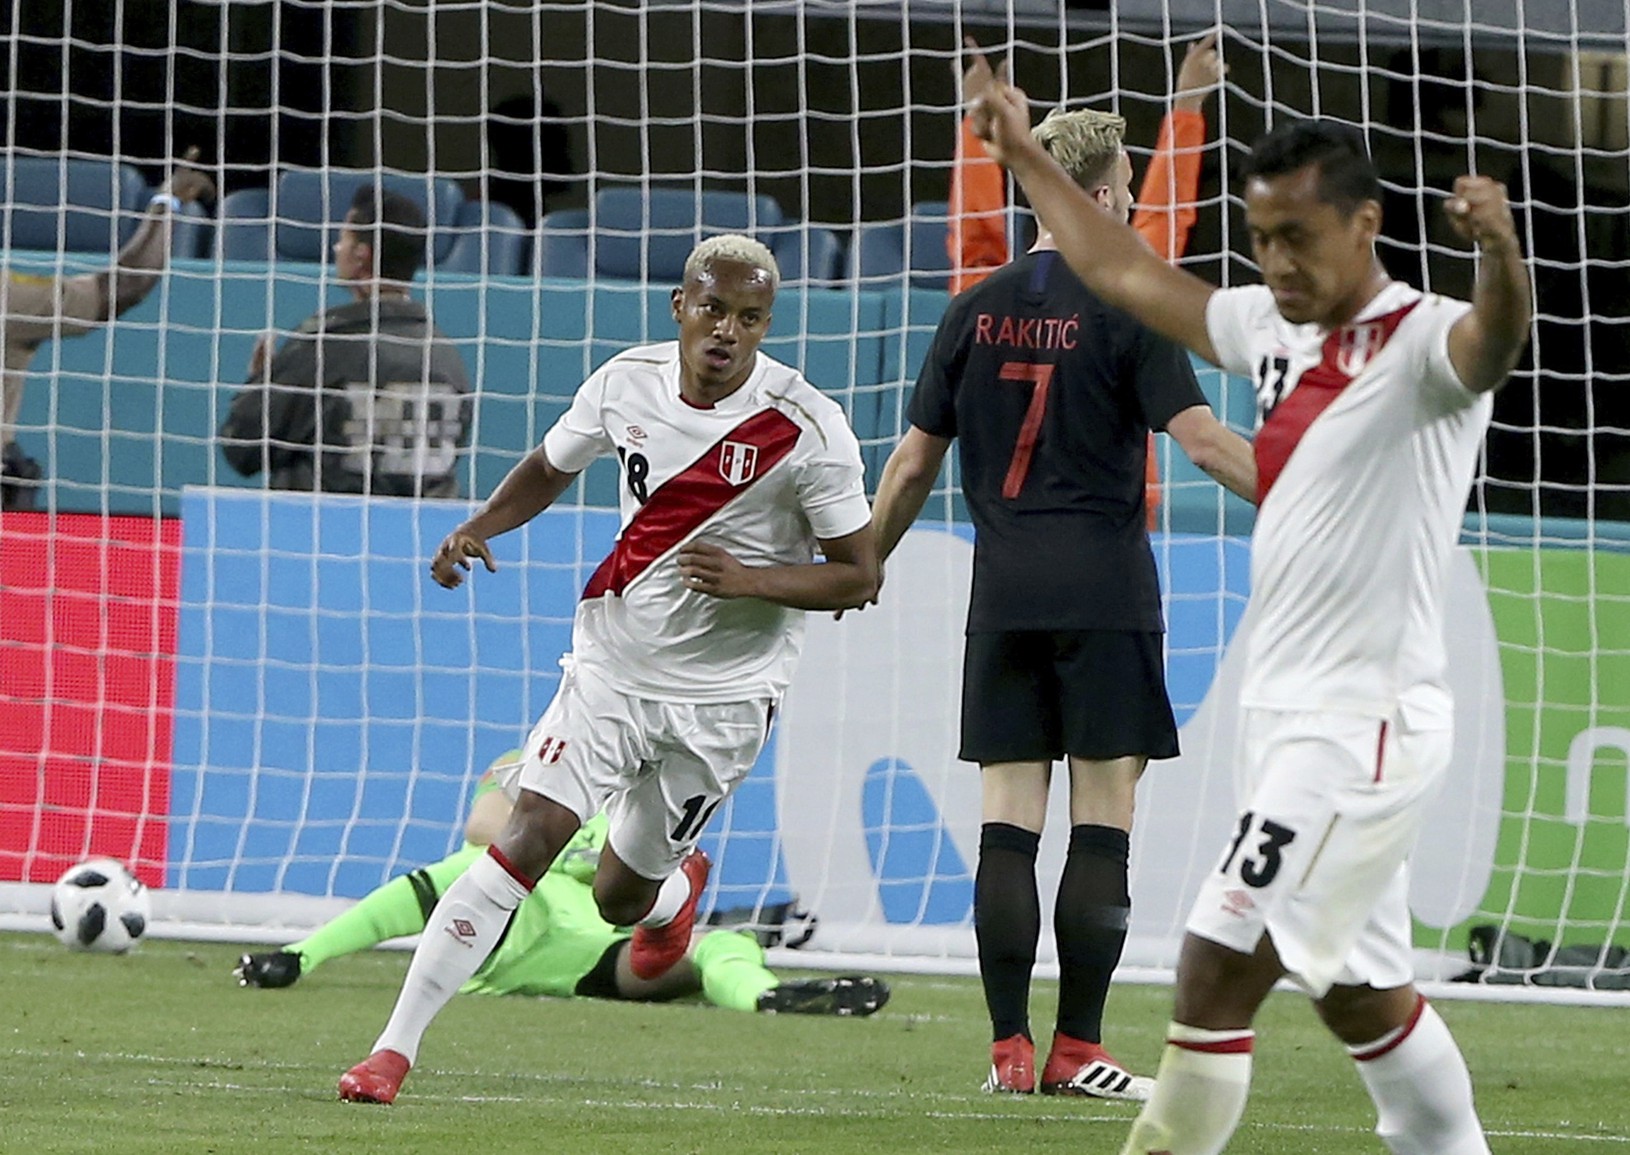 Hráči Peru oslavujú gól